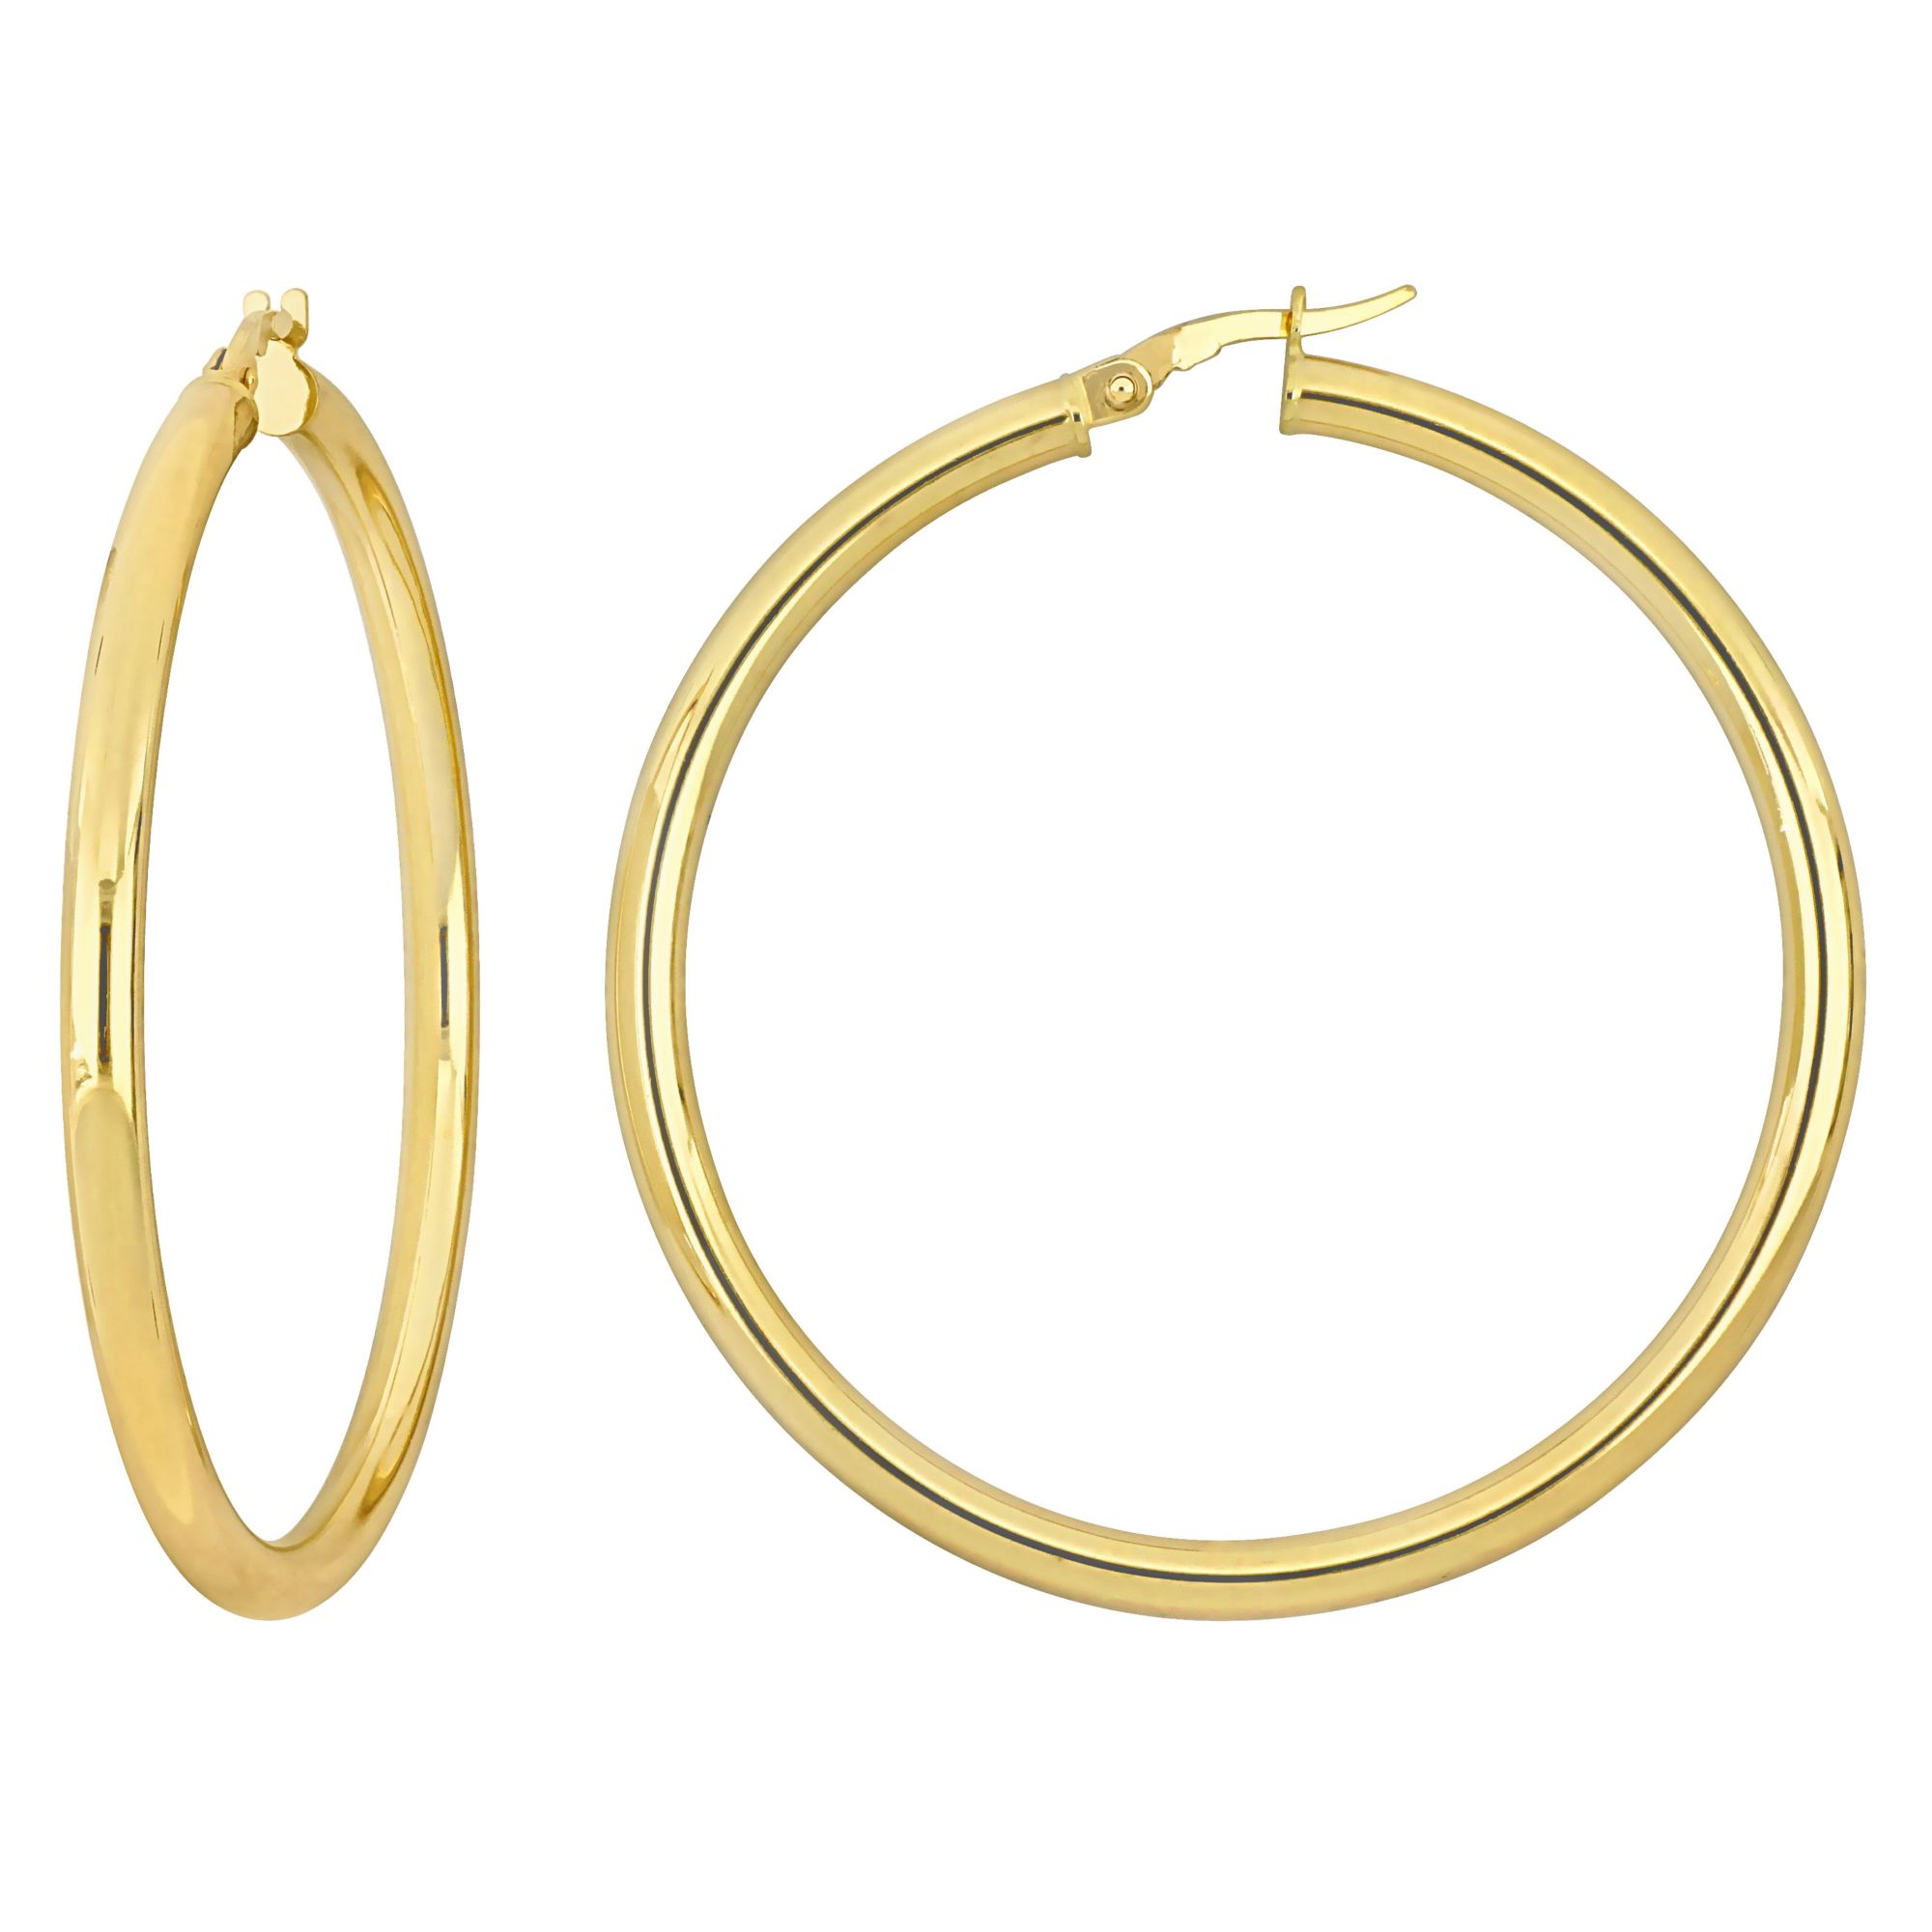 47mm Hoop Earrings in 14k Yellow Gold